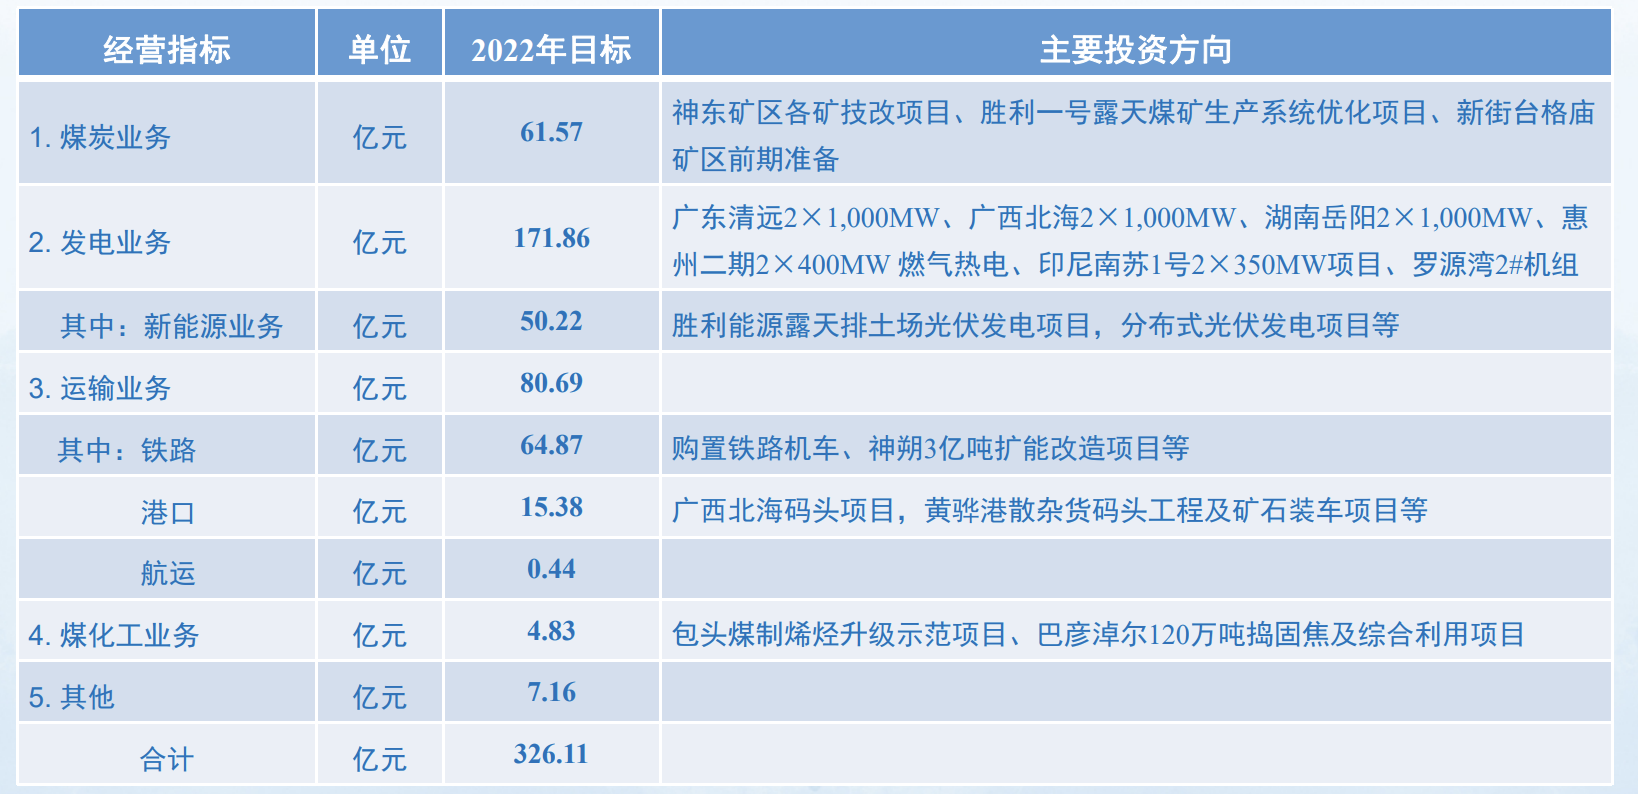  图片来源：上海证券交易所路演中心中国神华2021年度业绩说明会PPT